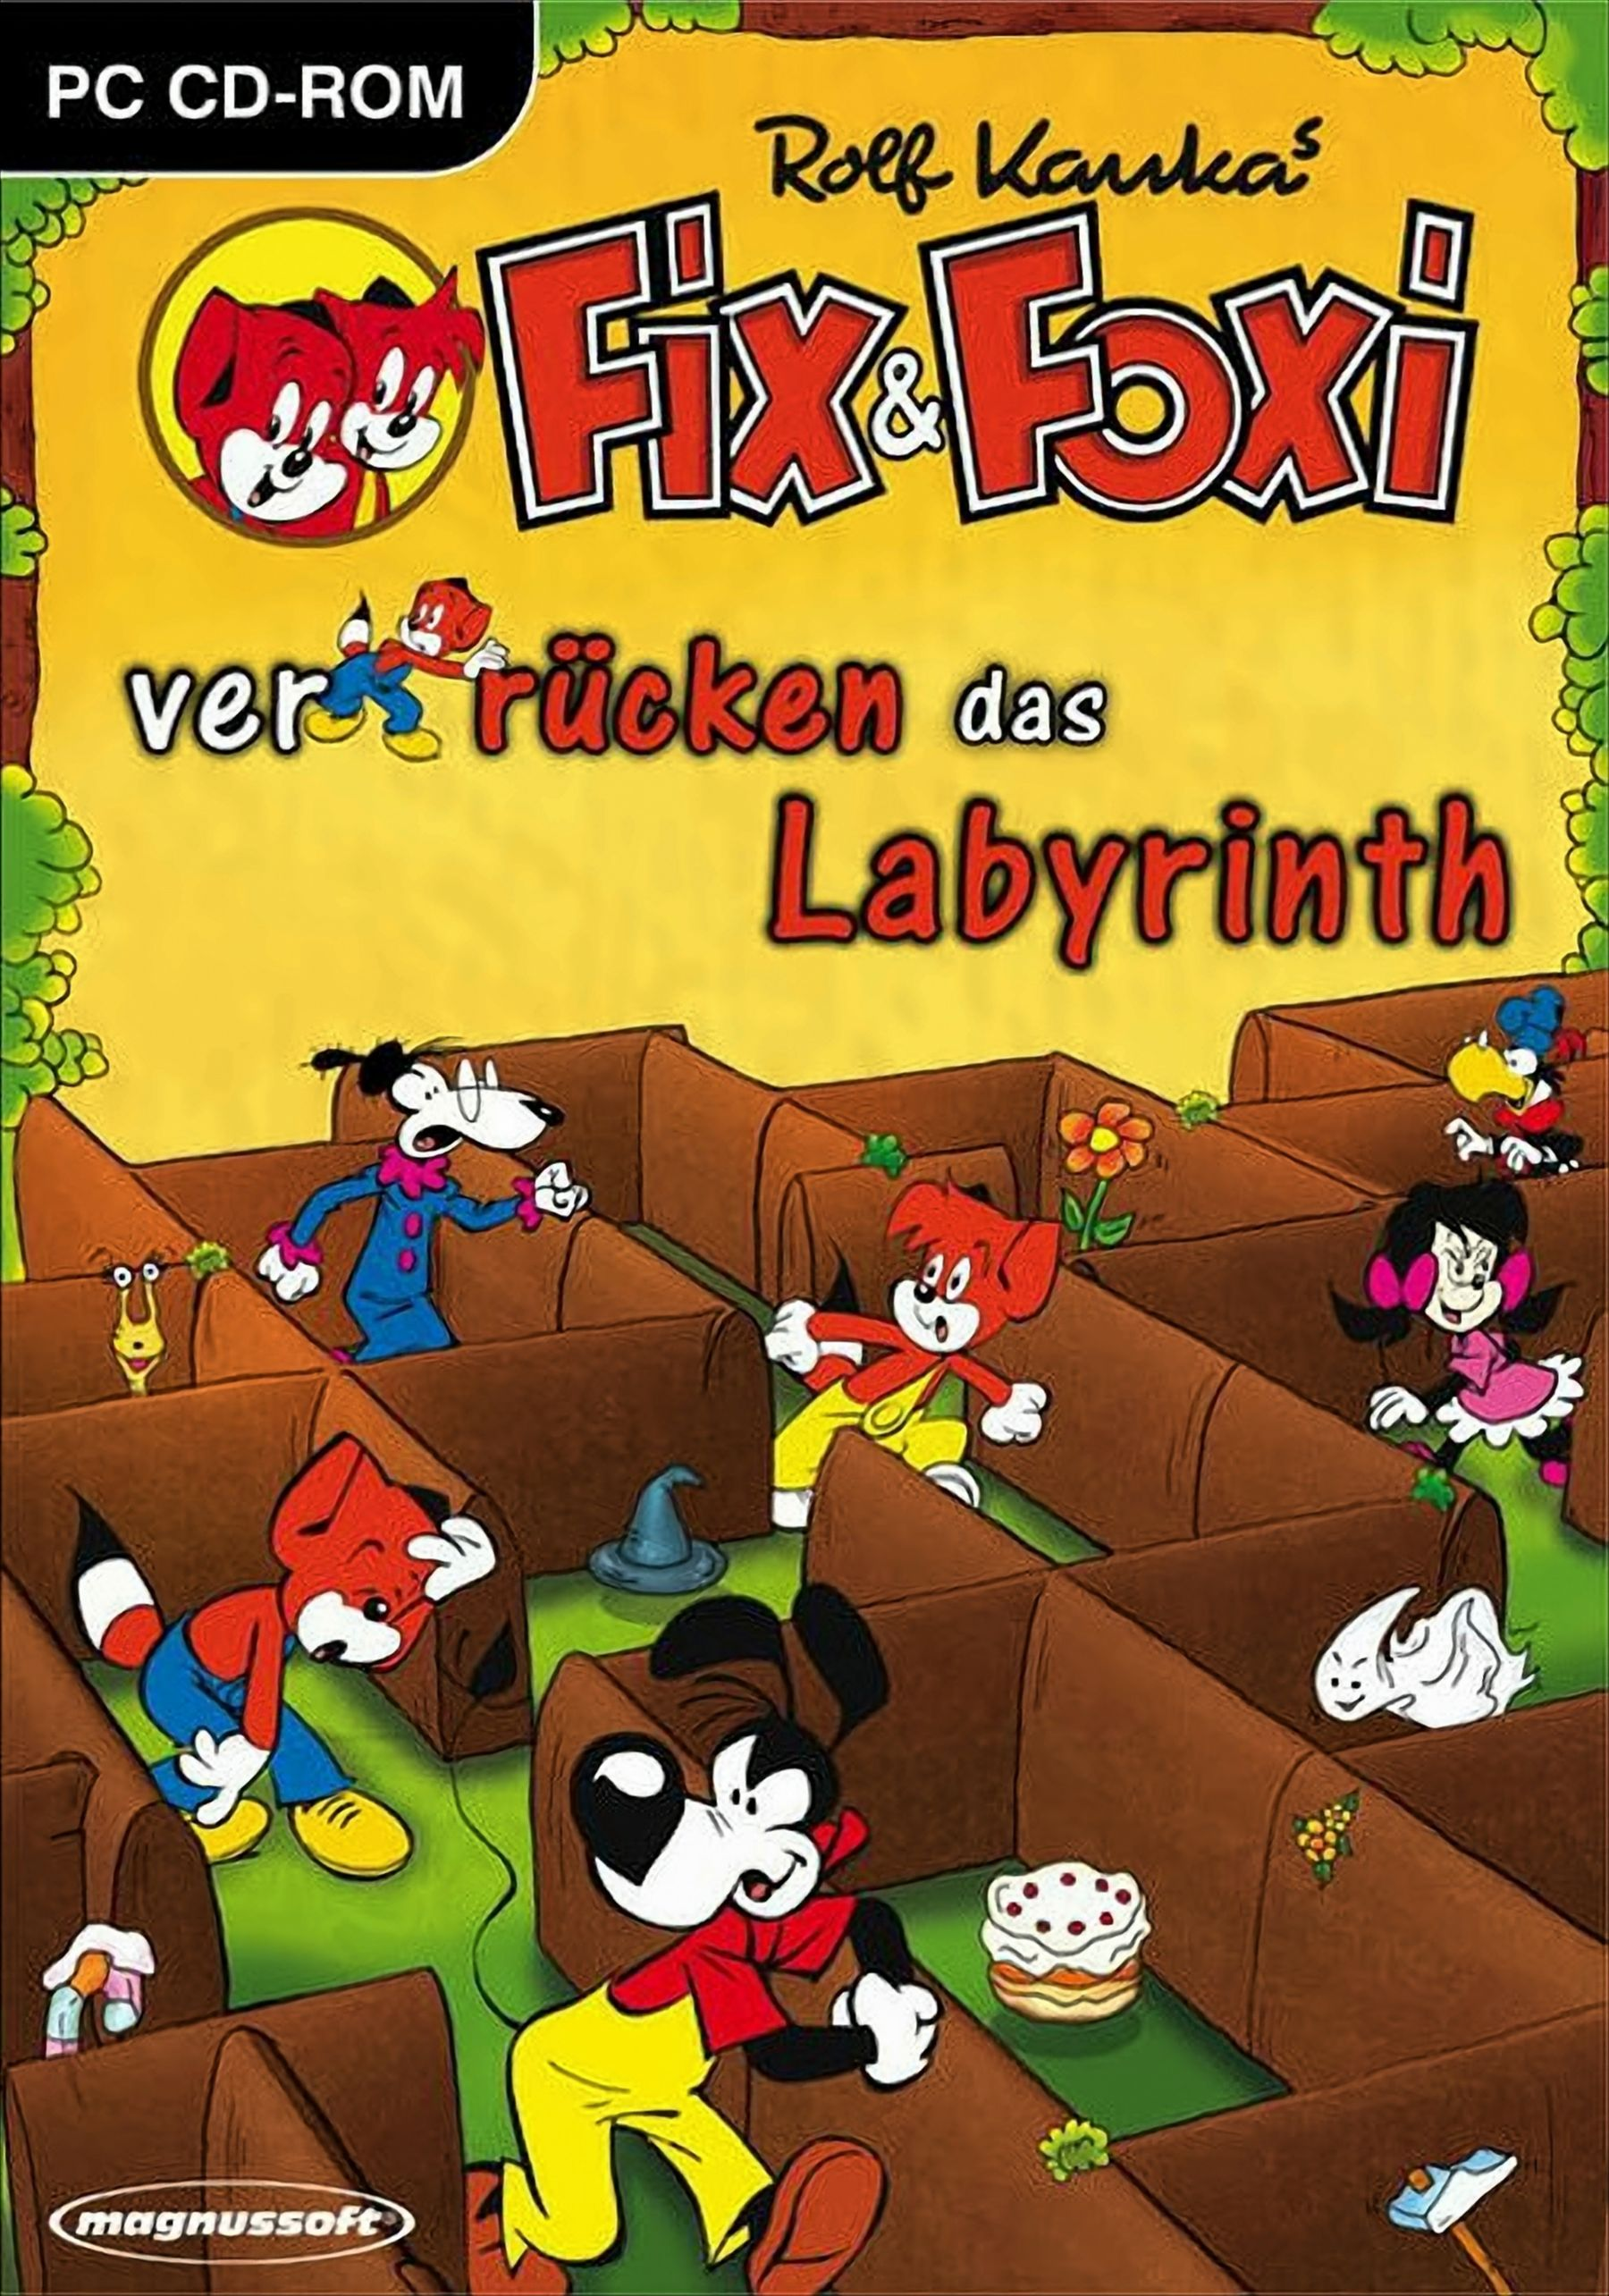 [PC] das Foxi & - Labyrinth Fix verrücken